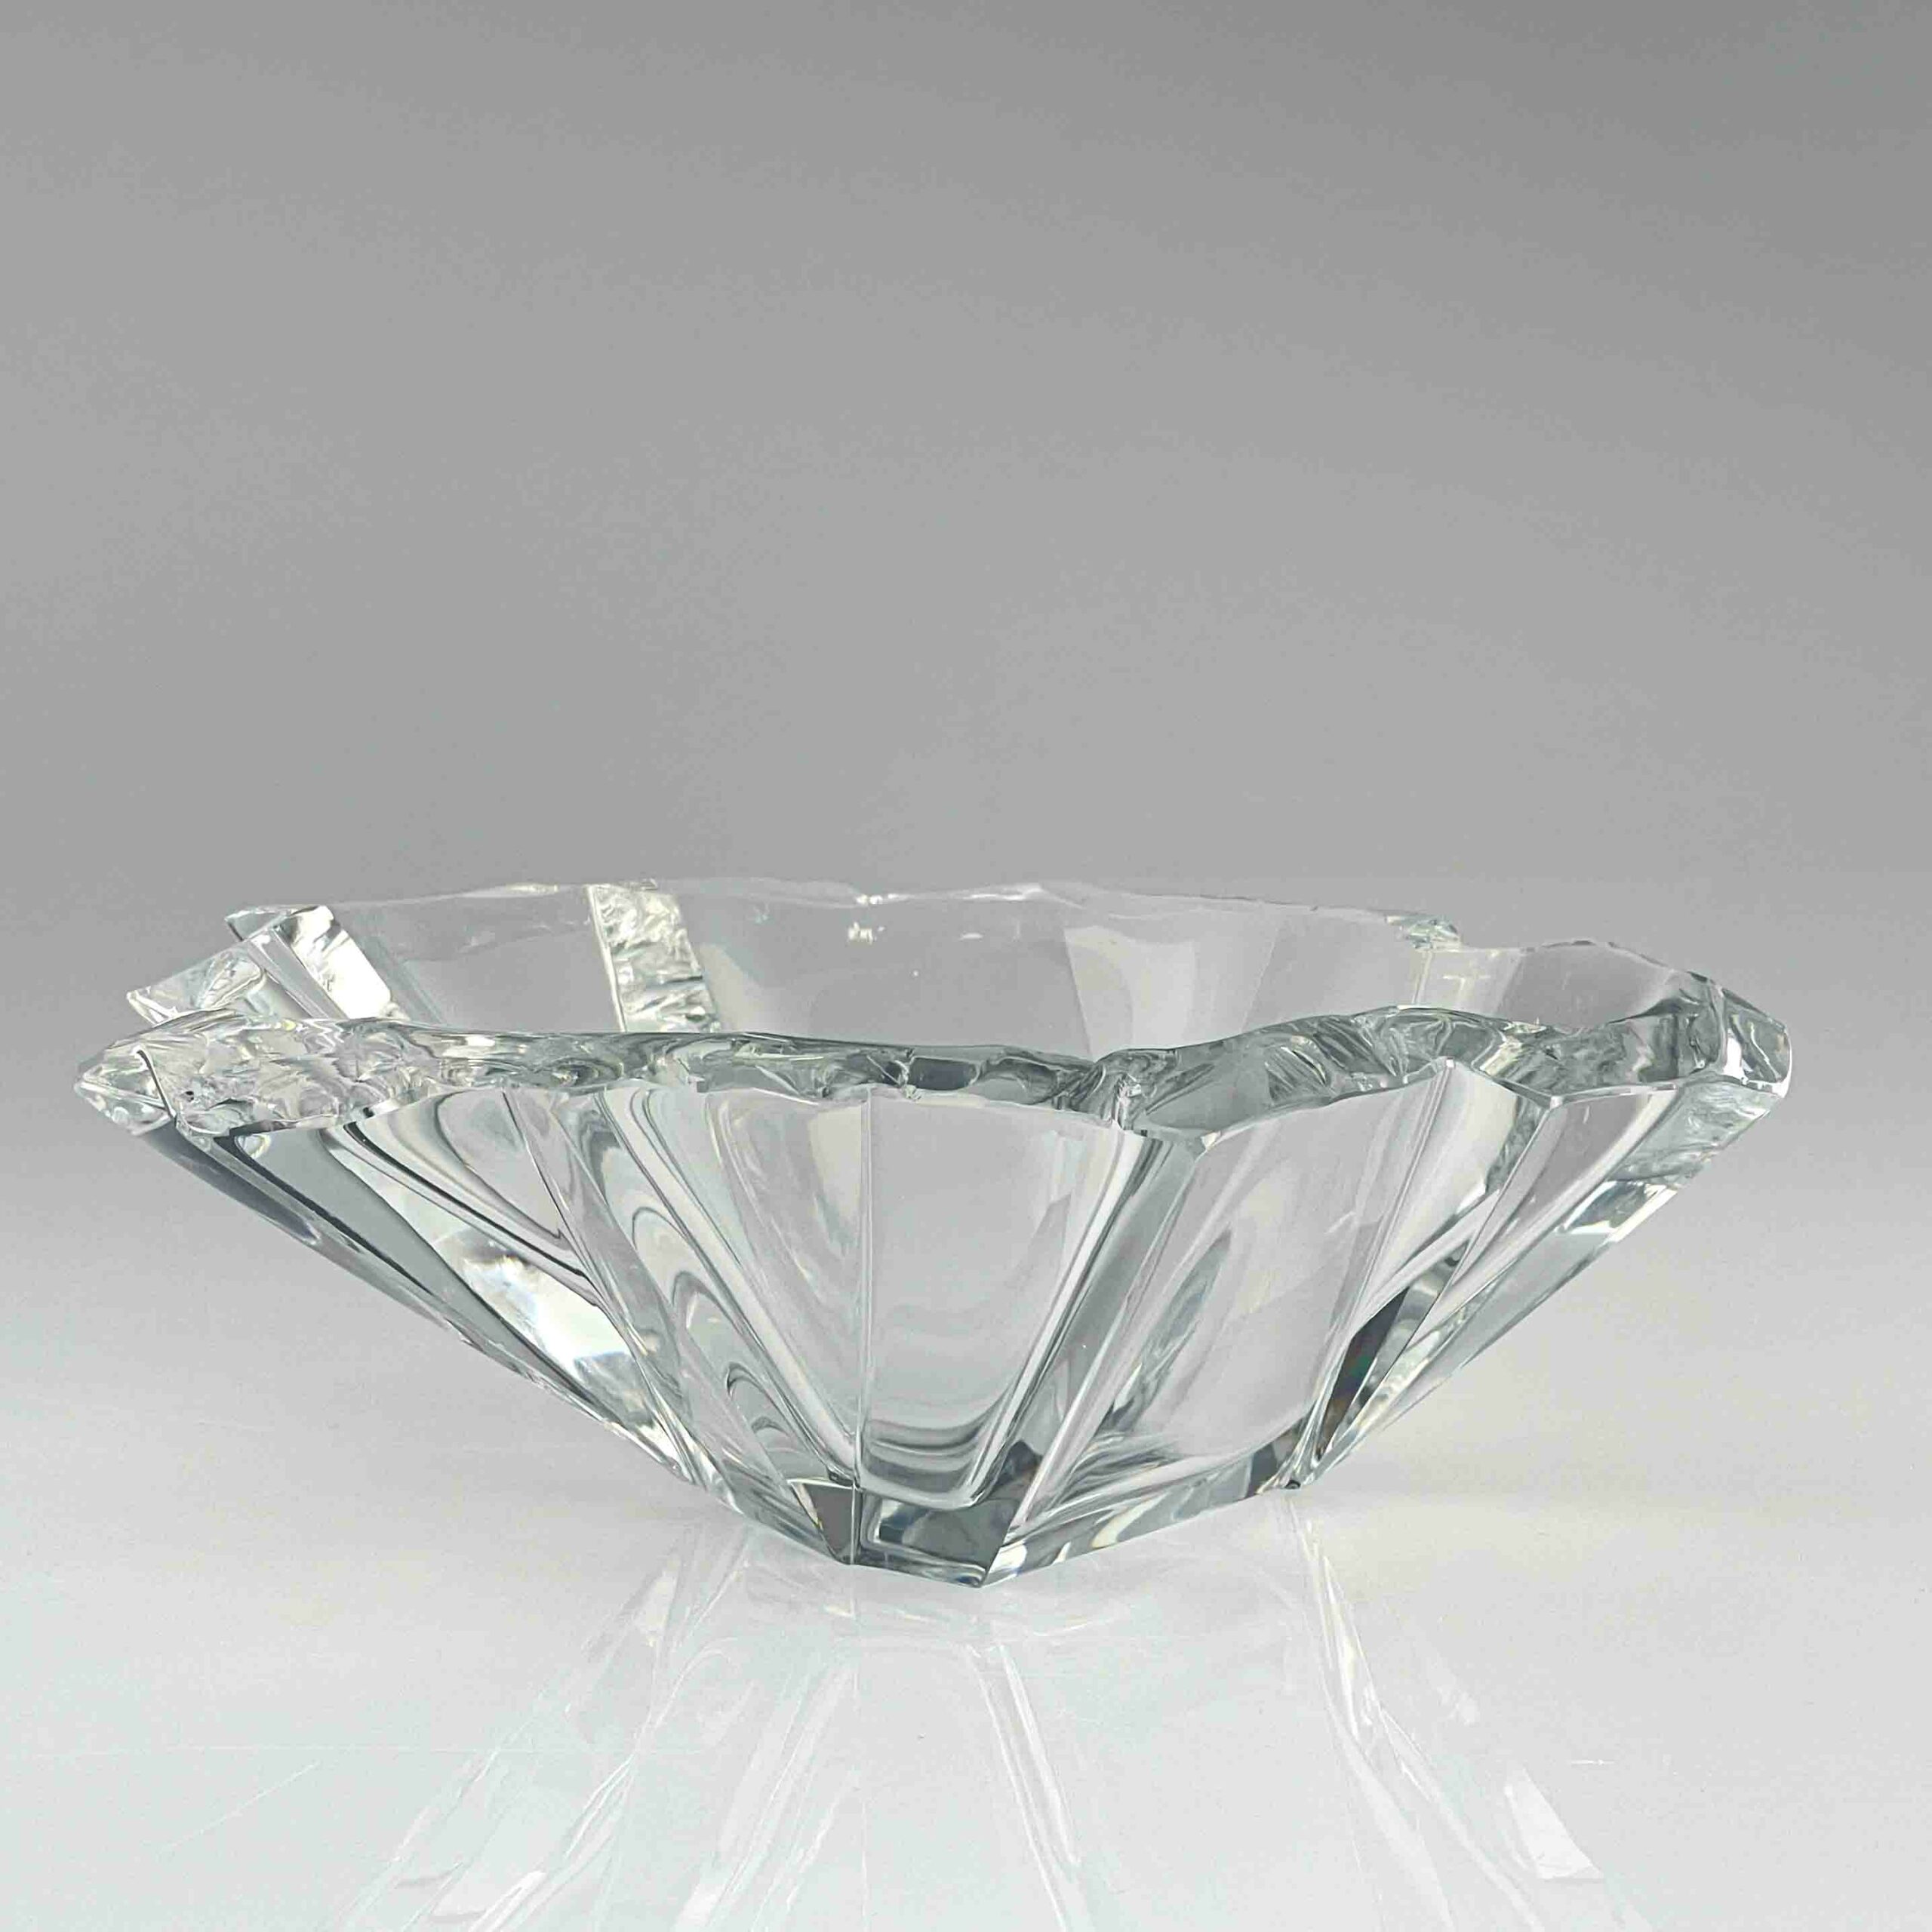 Tapio Wirkkala - Crystal Art-Object "Jaansaro" or "Iceblock", model 3847 - Iittala, Finland circa 1960